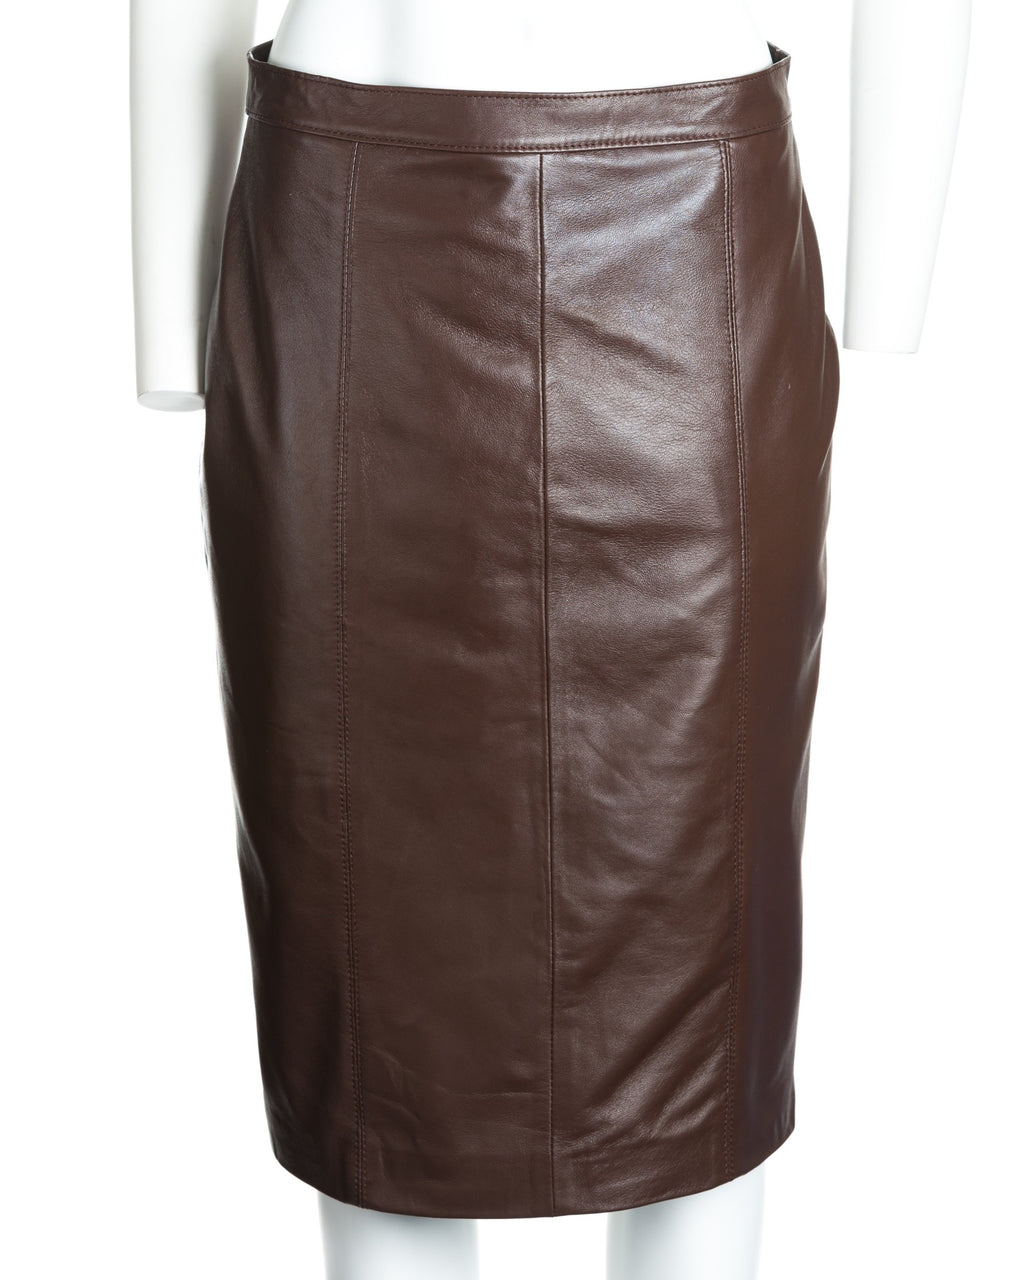 Ladies 25" Leather Skirt